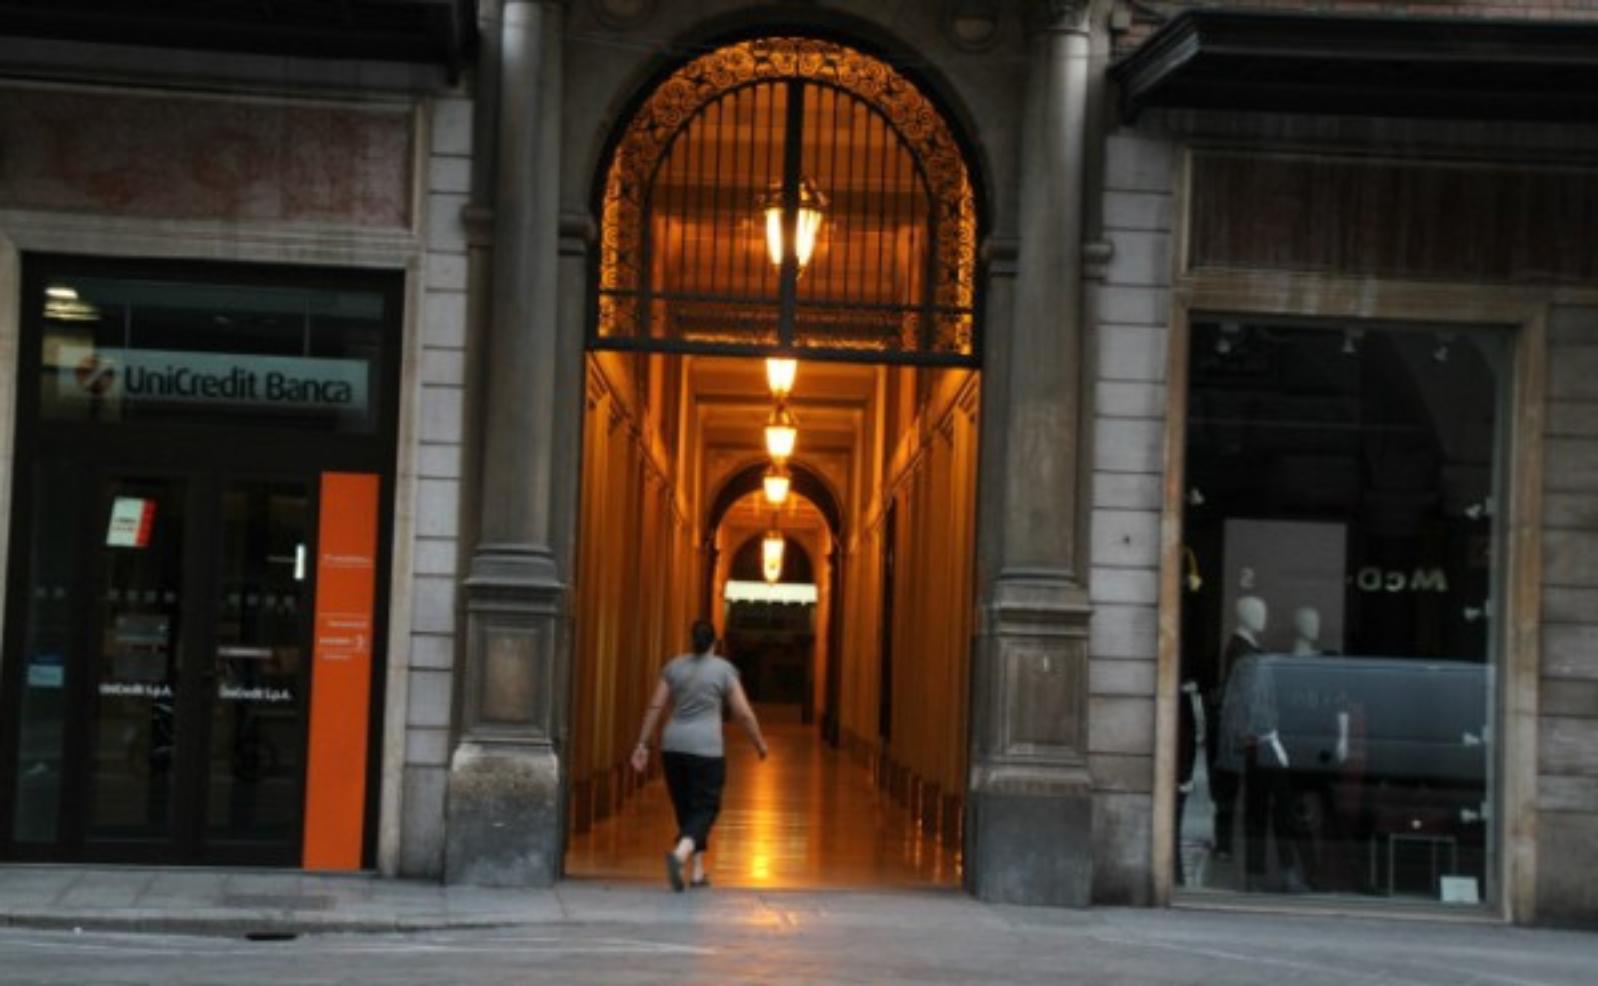 Palazzo Unicredit e Galleria Acquaderni